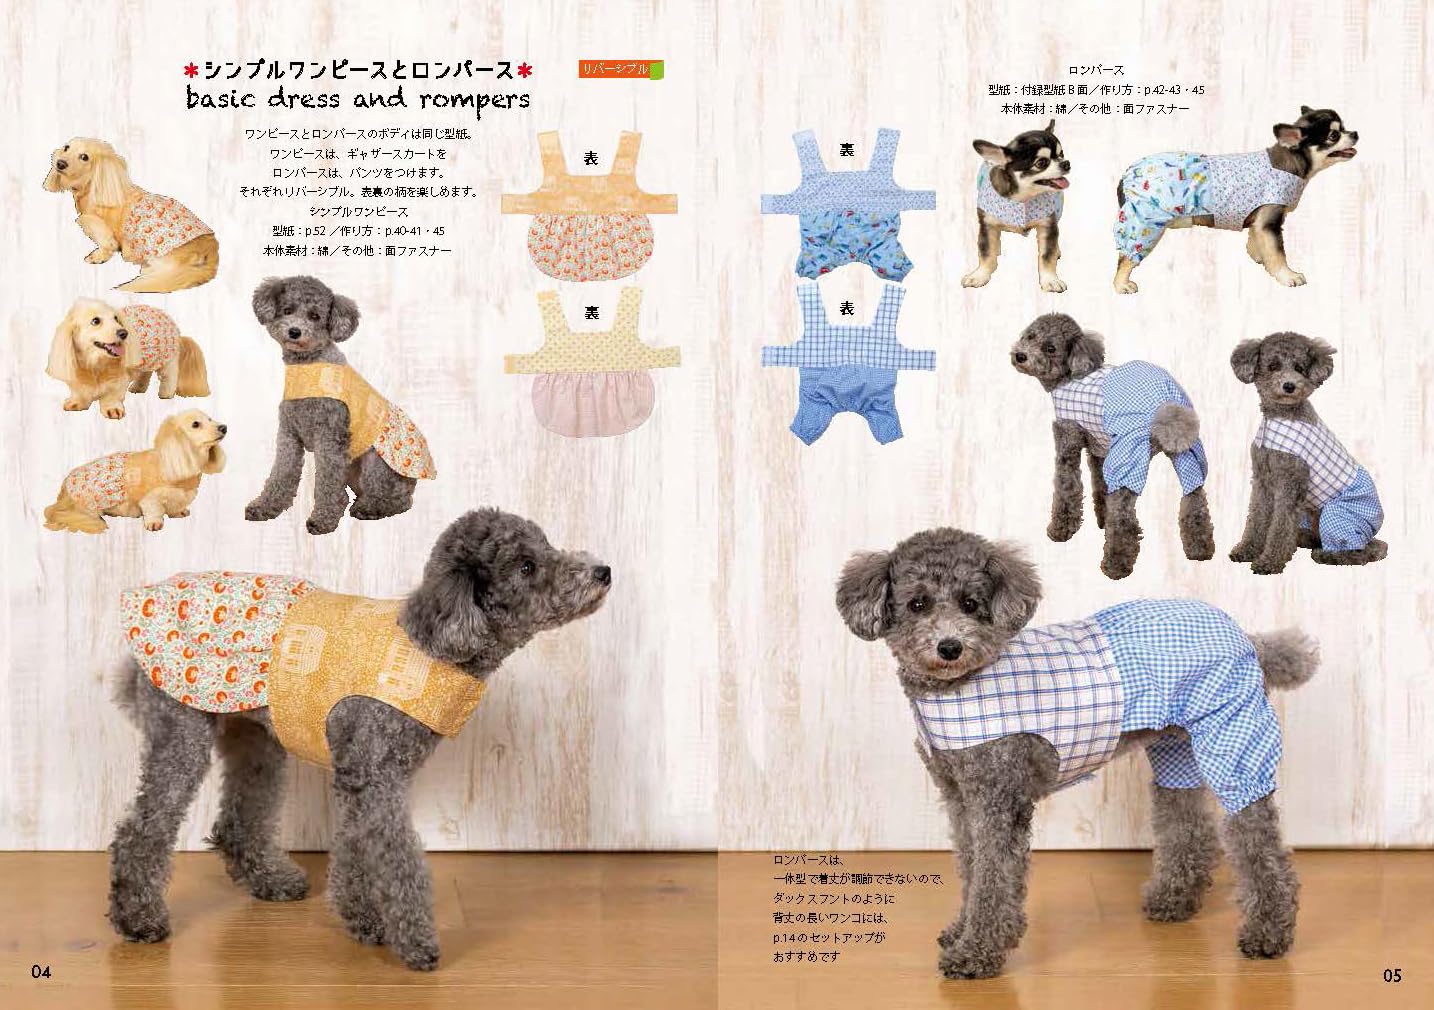 Japan | 平面的寵物衣服 從褲子到連身裙 從尿布到外套 | books 書籍